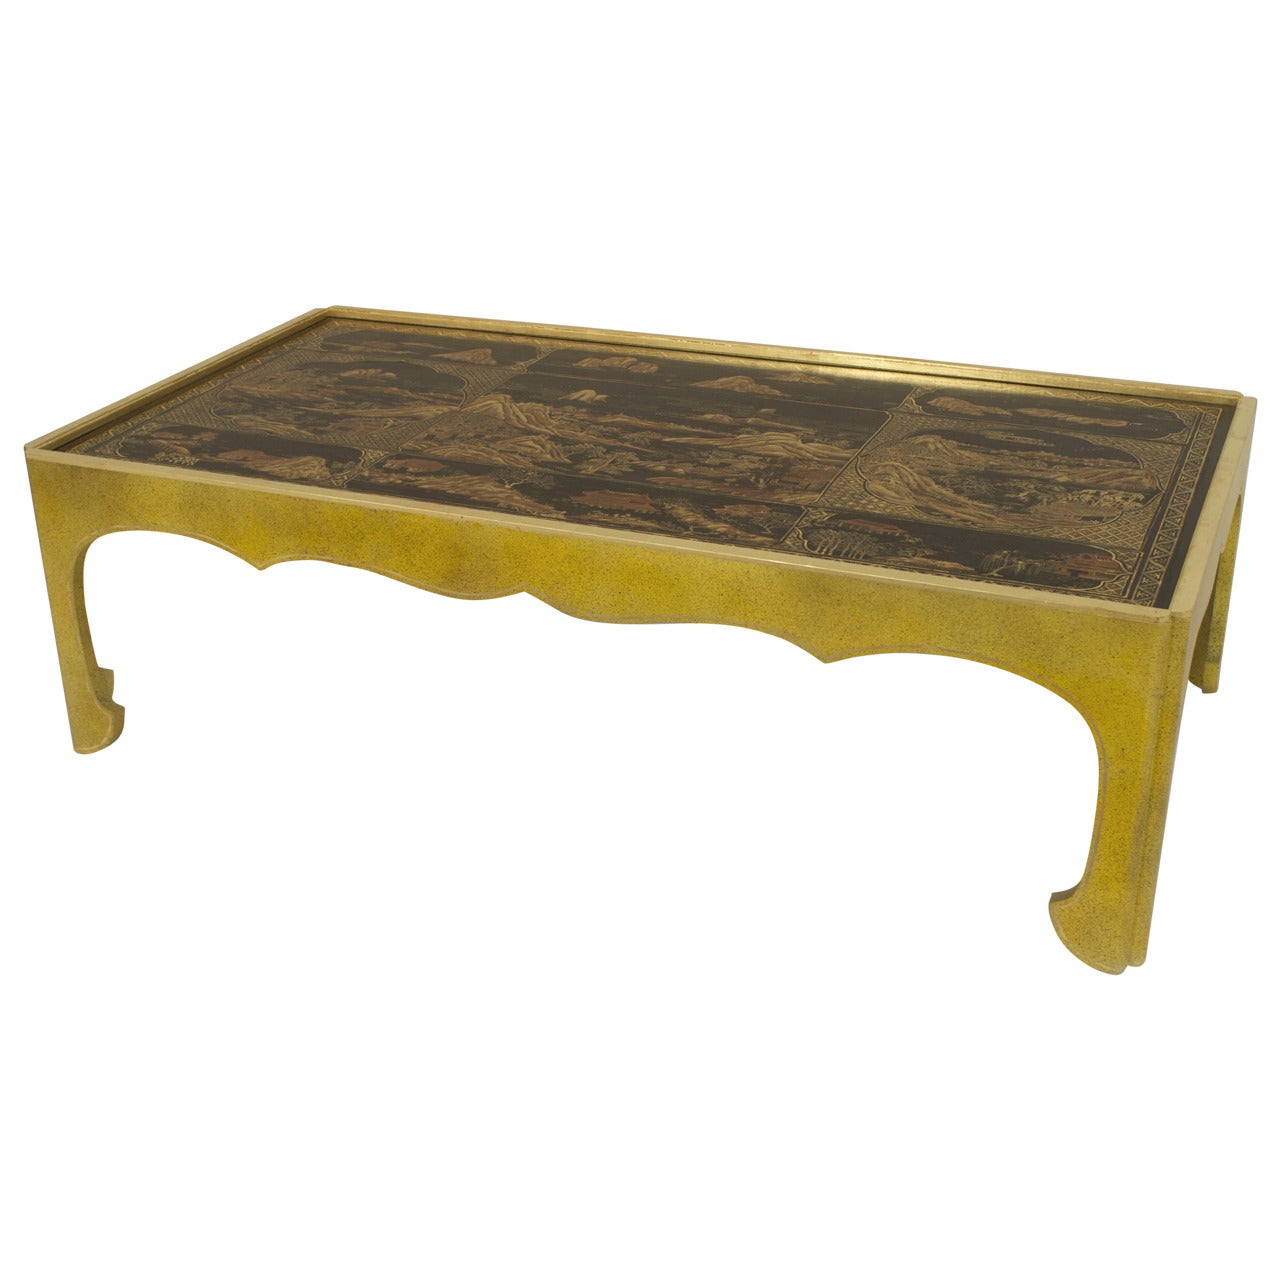 Table basse laquée sur mesure en bois doré de style chinoiserie